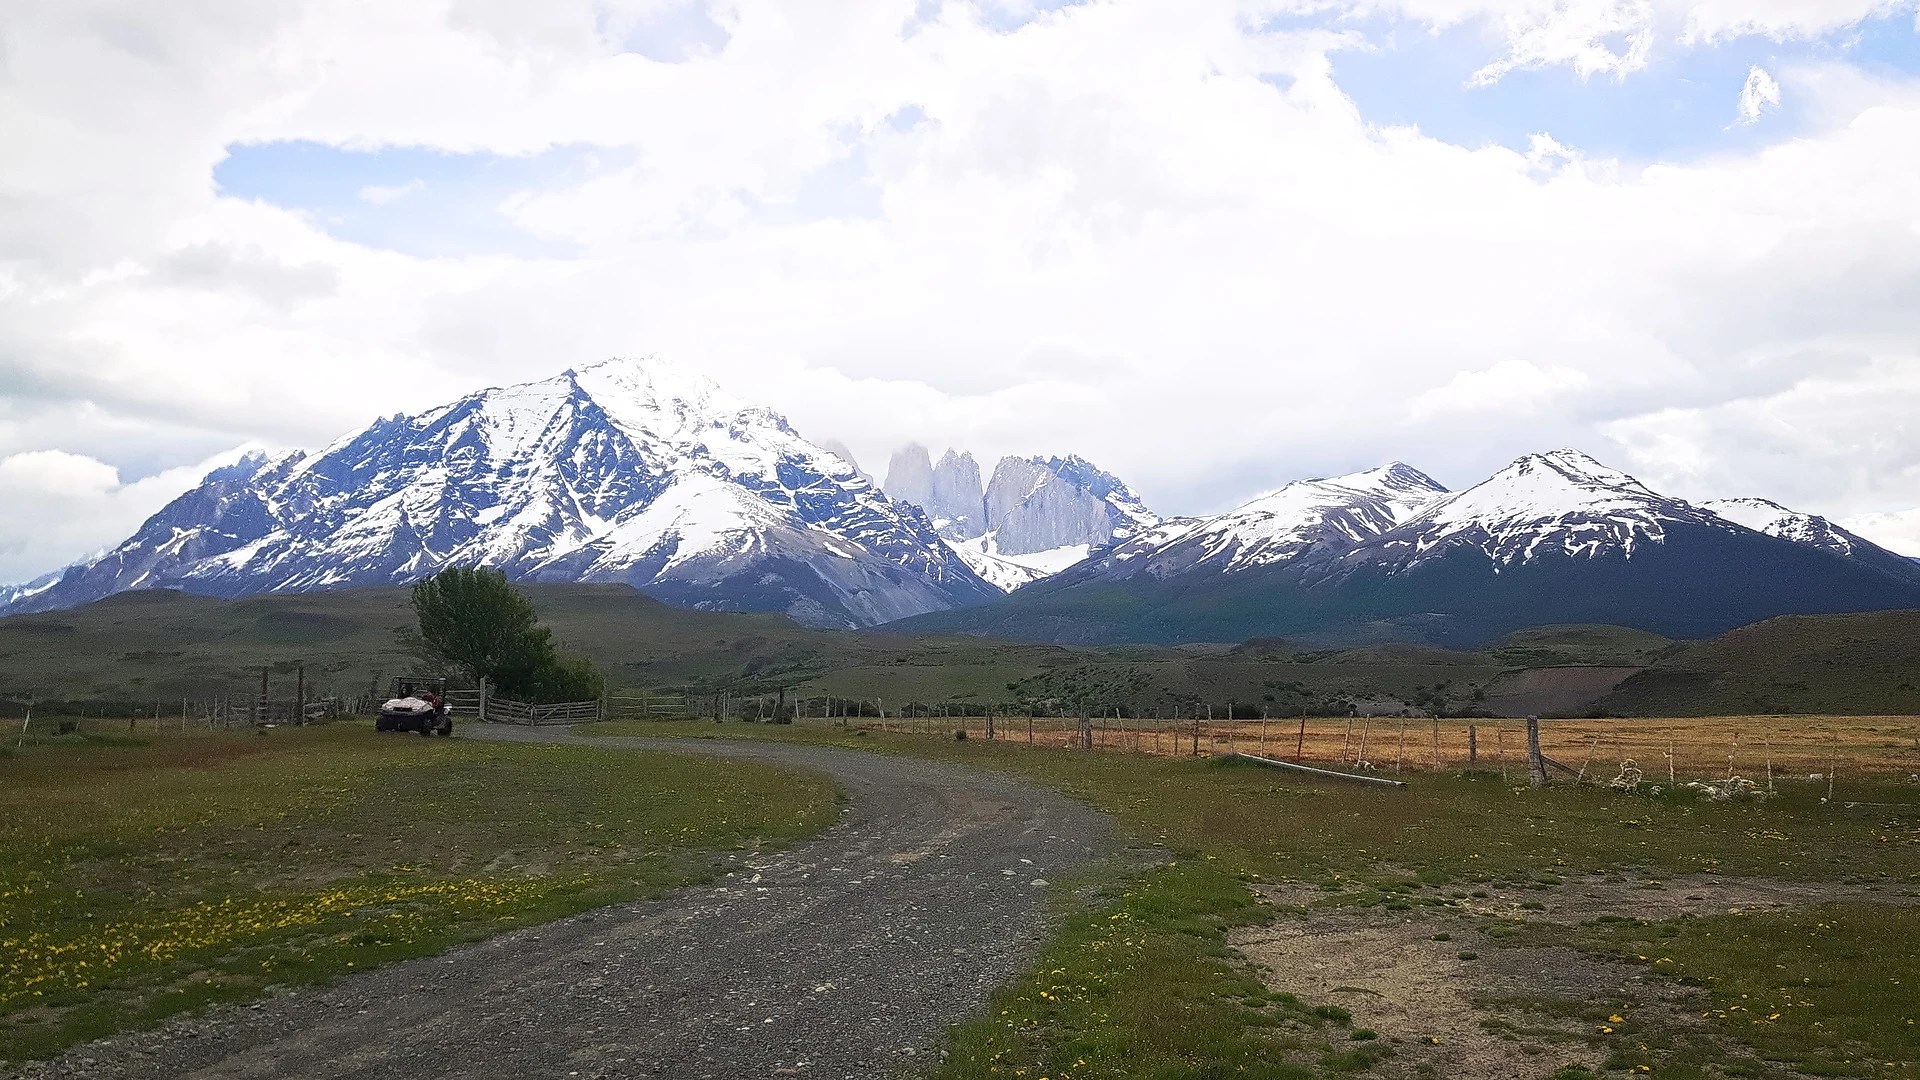 Exploration of the Torres del Paine landscape